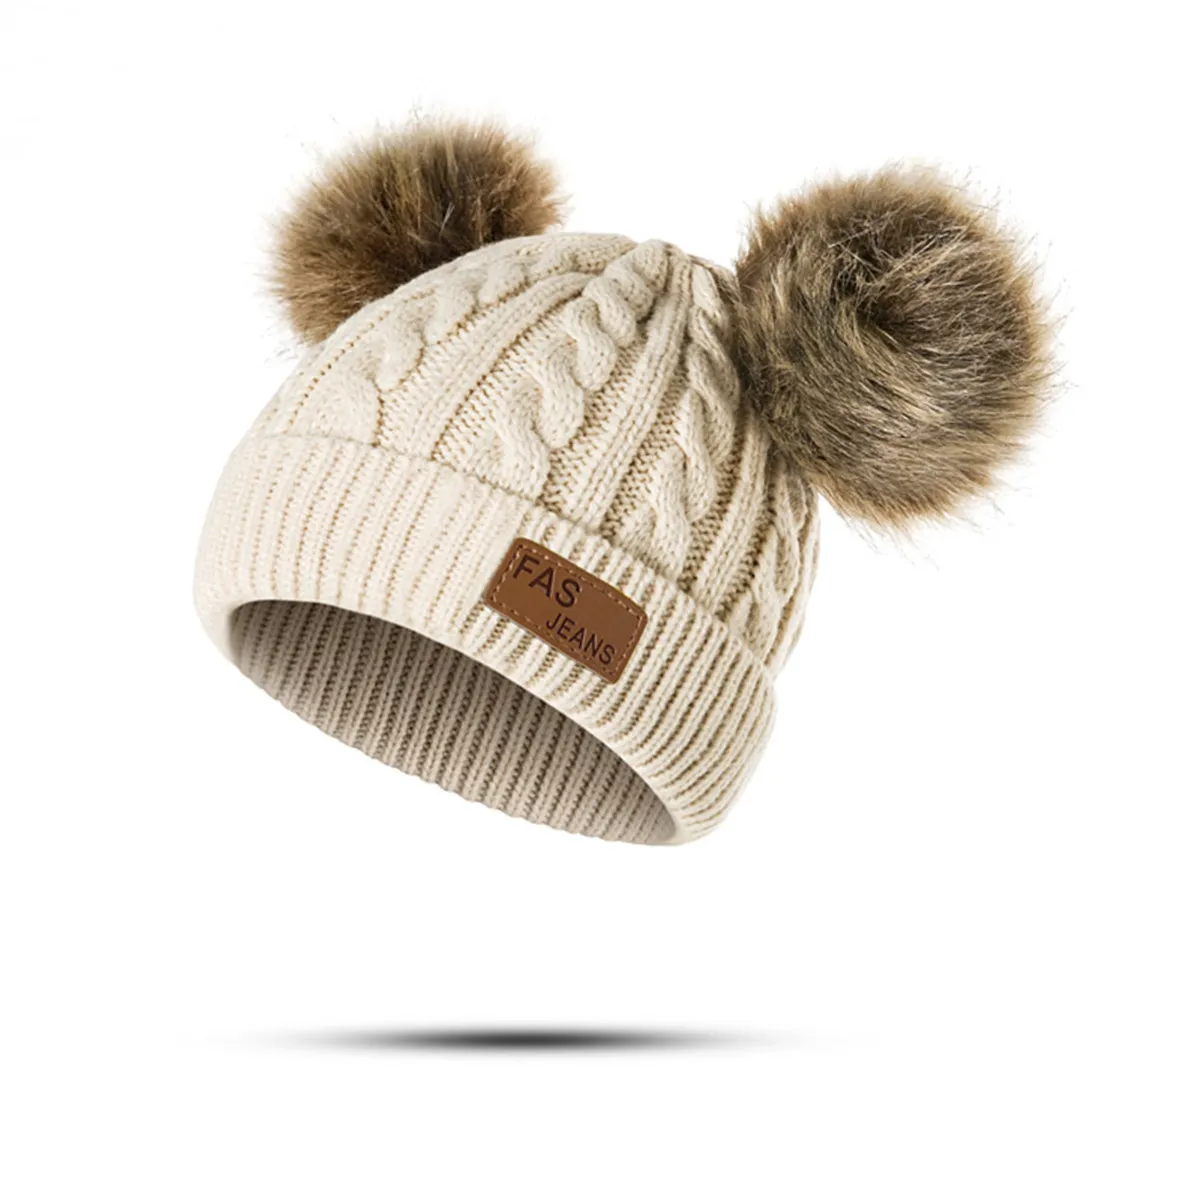 DMROLES/шапка для маленьких девочек; вязаная крючком шапка с двойным помпоном для девочек и мальчиков; детская зимняя теплая шапка; реквизит для фотосессии; Прямая поставка